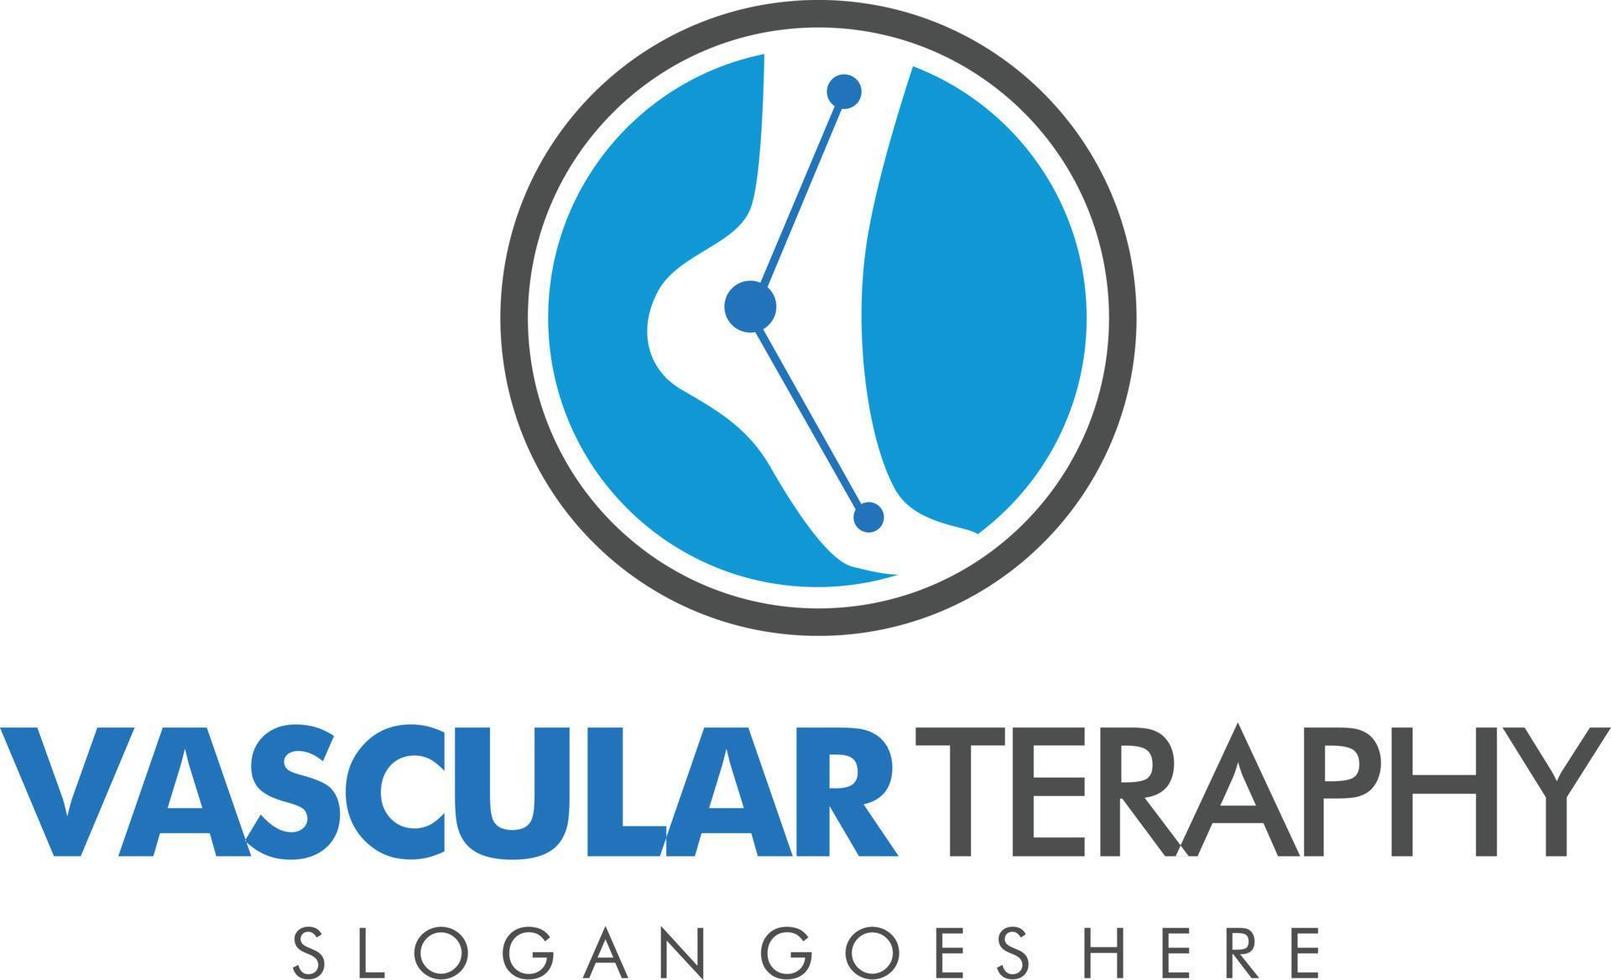 conception de logo moderne minimaliste de vecteur téraphy vasculaire de santé propre isolé sur fond blanc